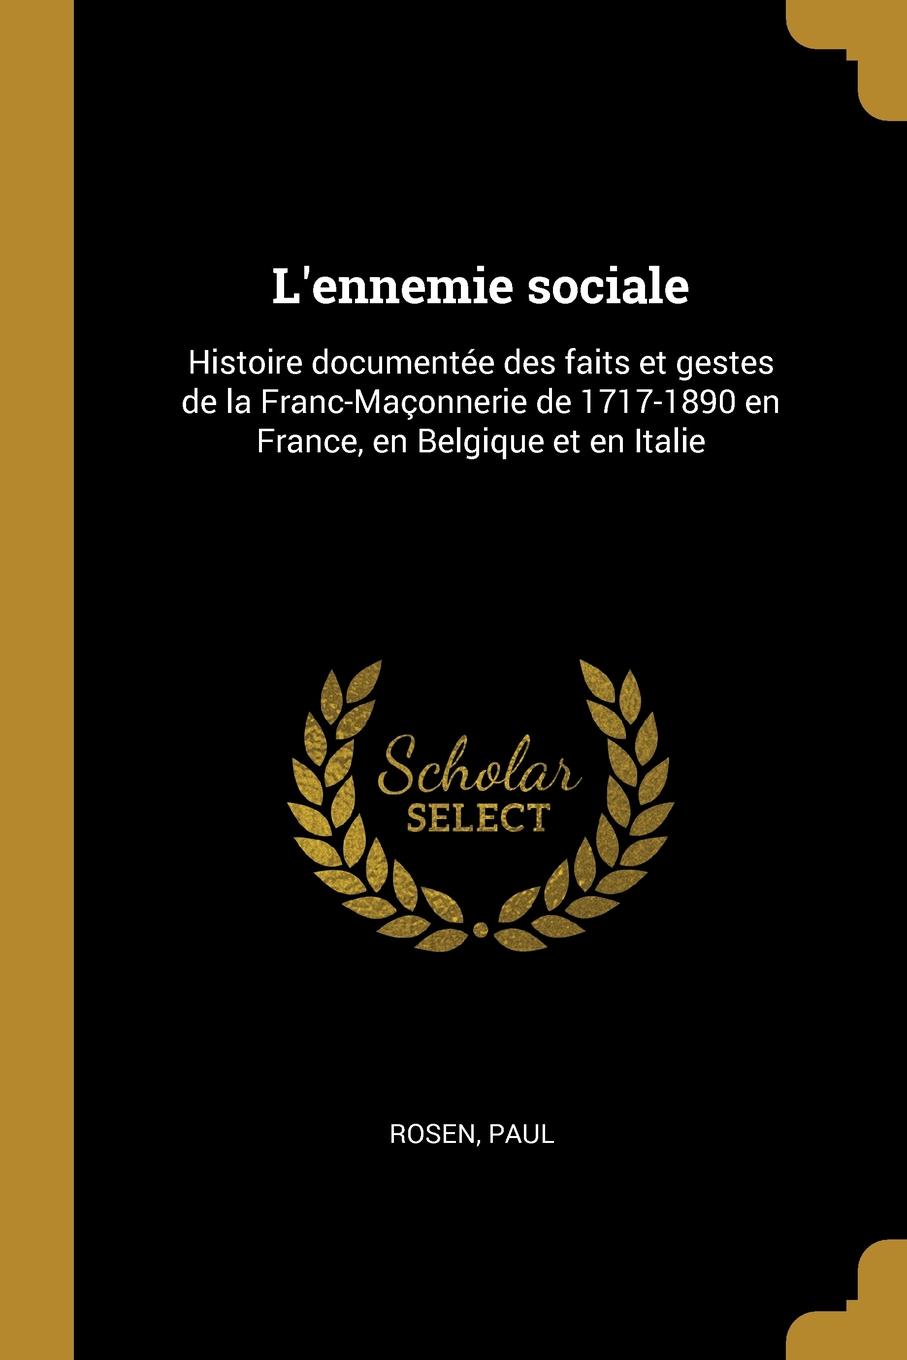 L.ennemie sociale. Histoire documentee des faits et gestes de la Franc-Maconnerie de 1717-1890 en France, en Belgique et en Italie